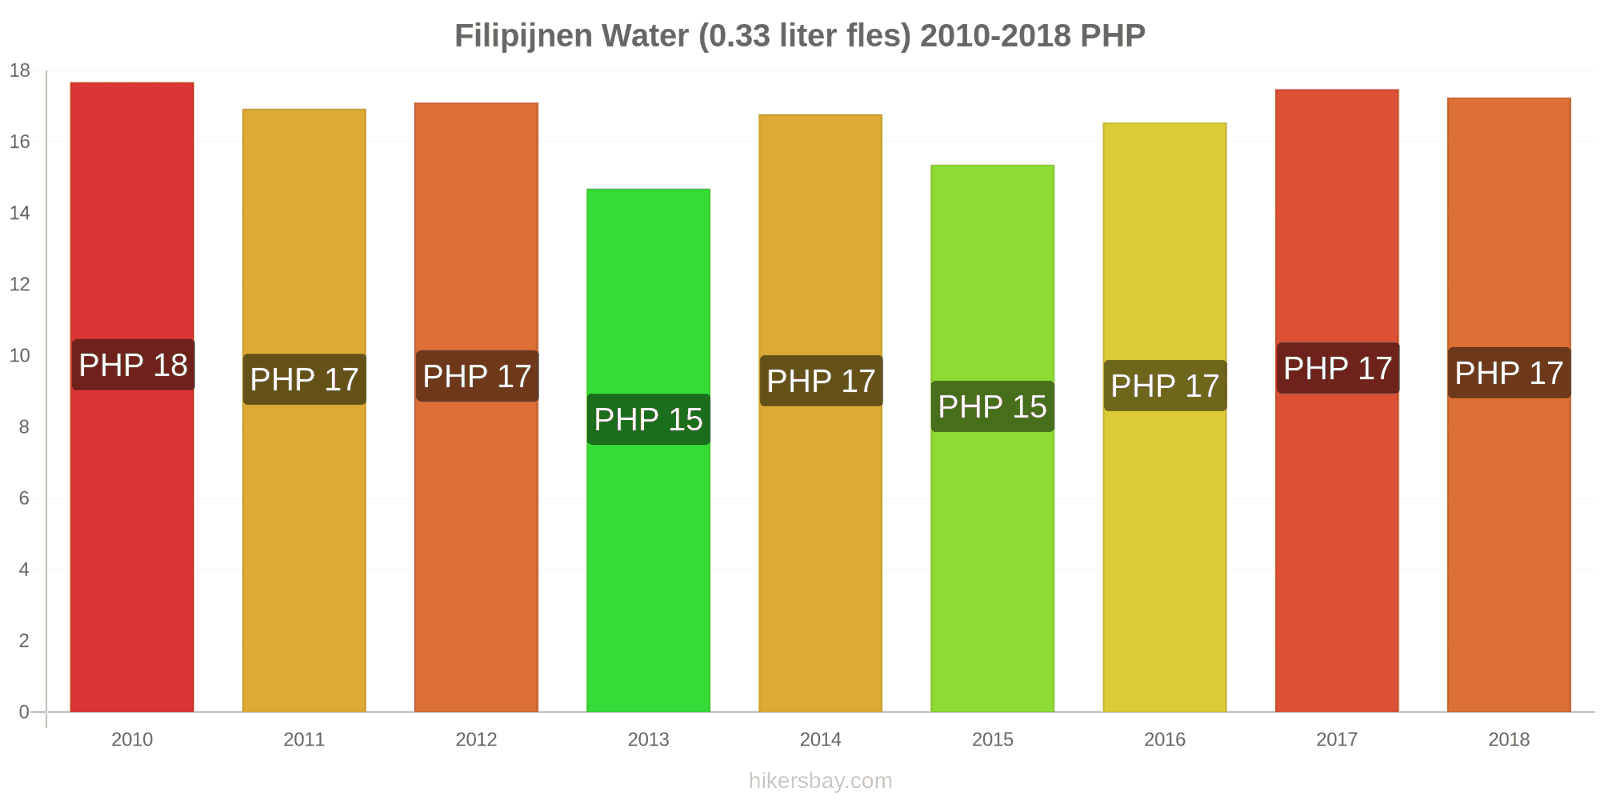 Filipijnen prijswijzigingen Water (0.33 liter fles) hikersbay.com